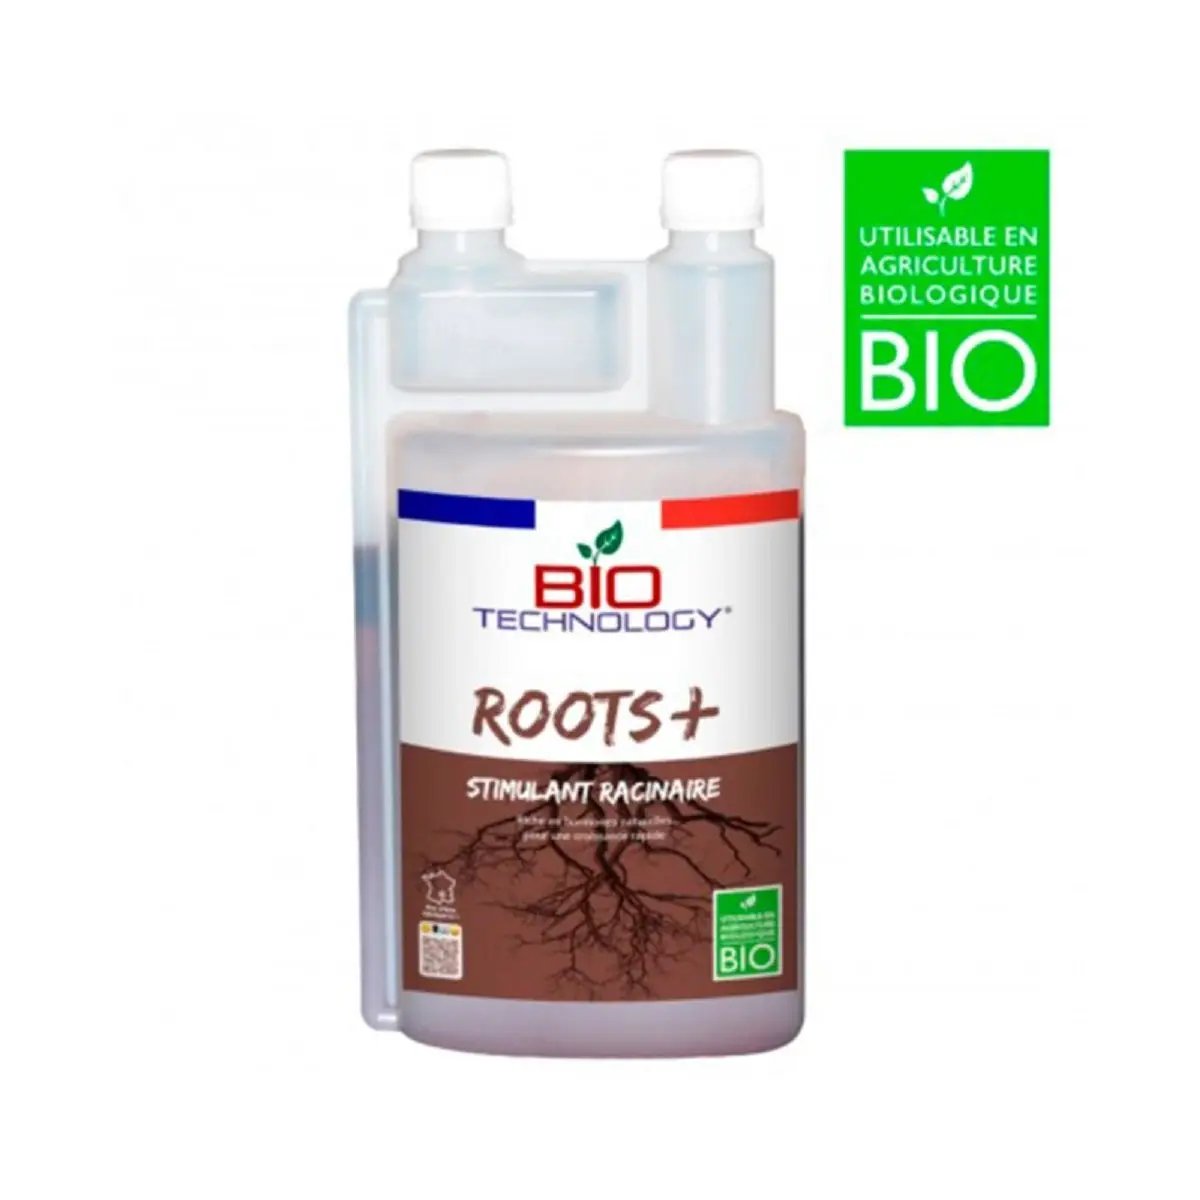 Engrais Bio Technology Roots+ 1 litre